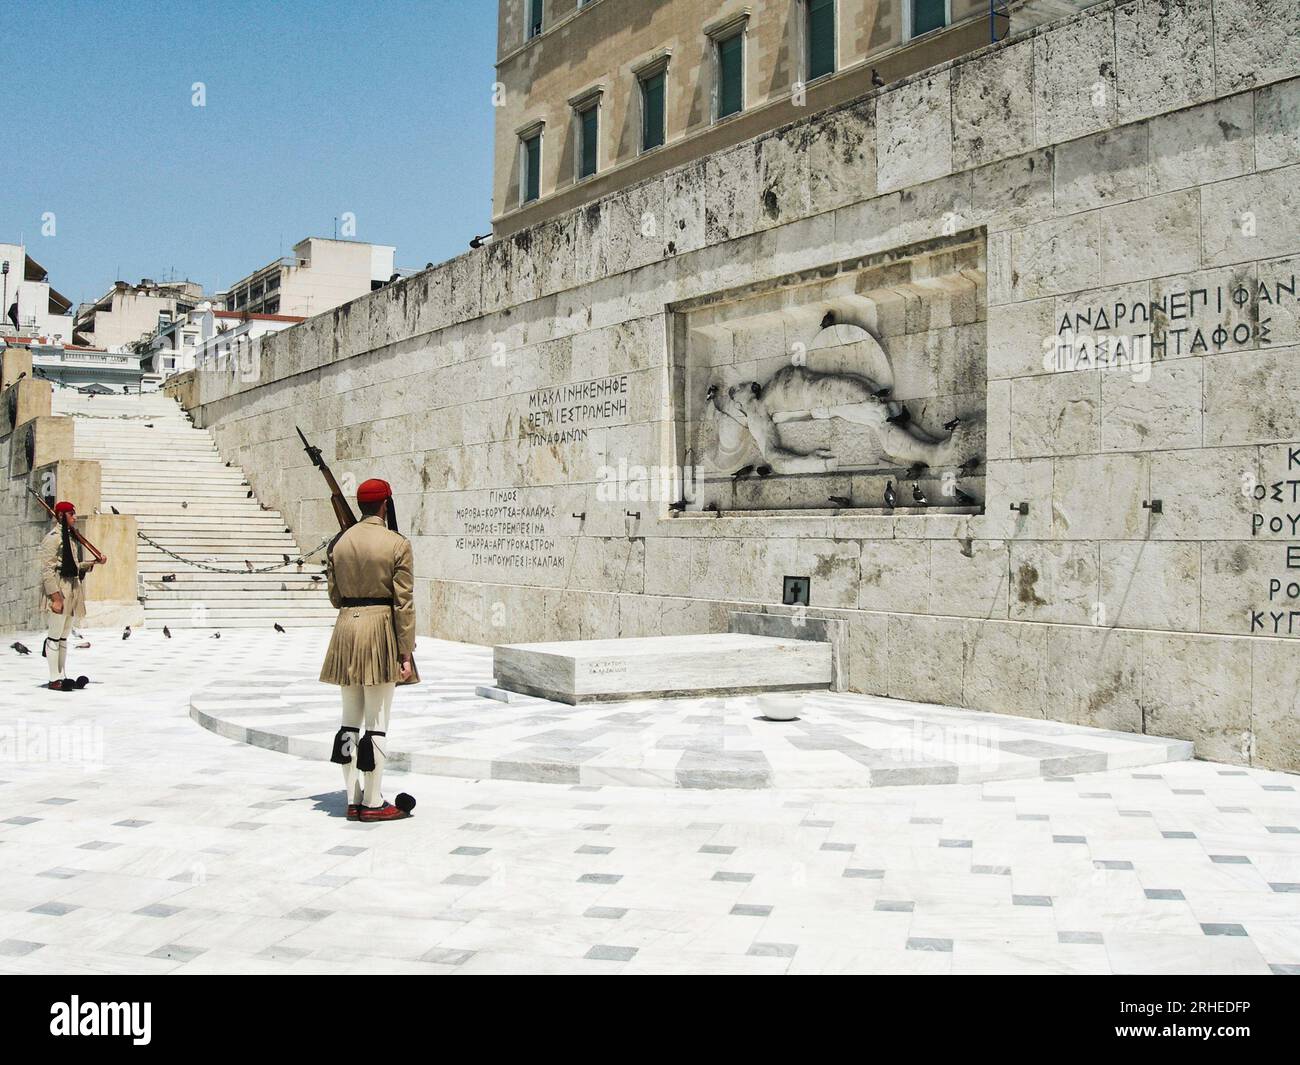 Athènes, Grèce - 2005-08-10 - Un adulte de sexe masculin se tient debout sur la défensive, tenant une arme contre un mur de pierre solide en arrière-plan Banque D'Images